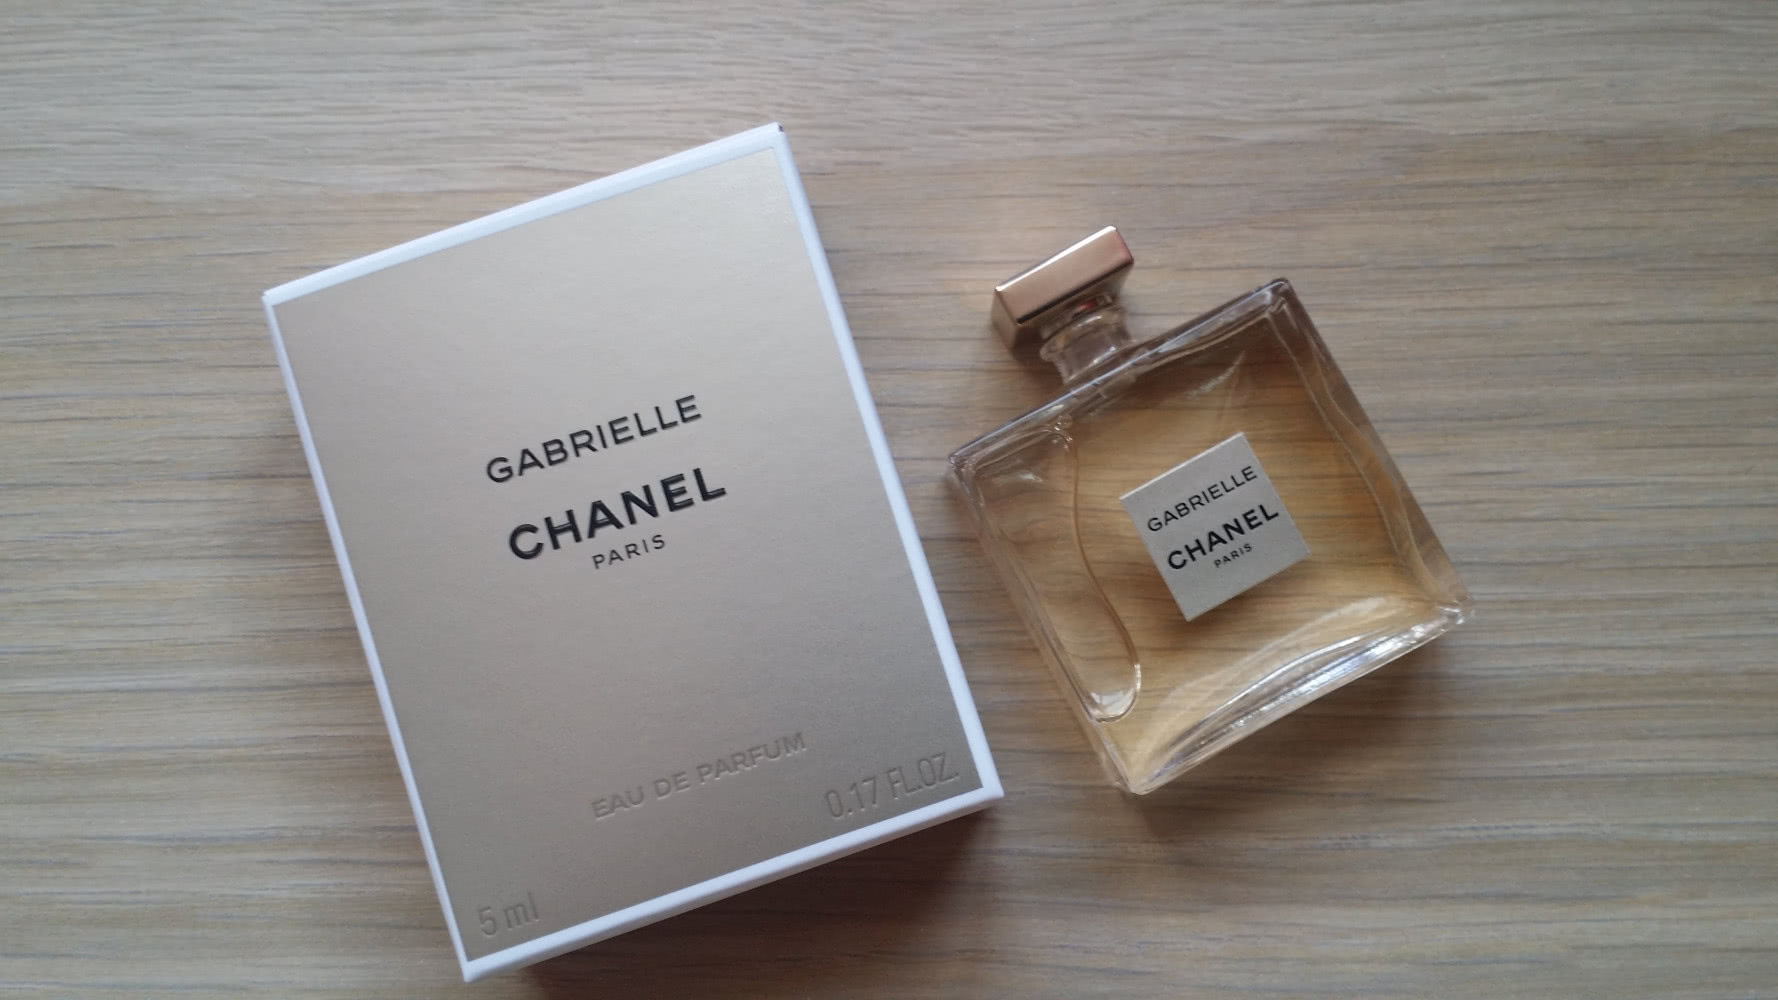 Новая миниатюра аромата Chanel Gabrielle новая, в слюде, объем 5 мл